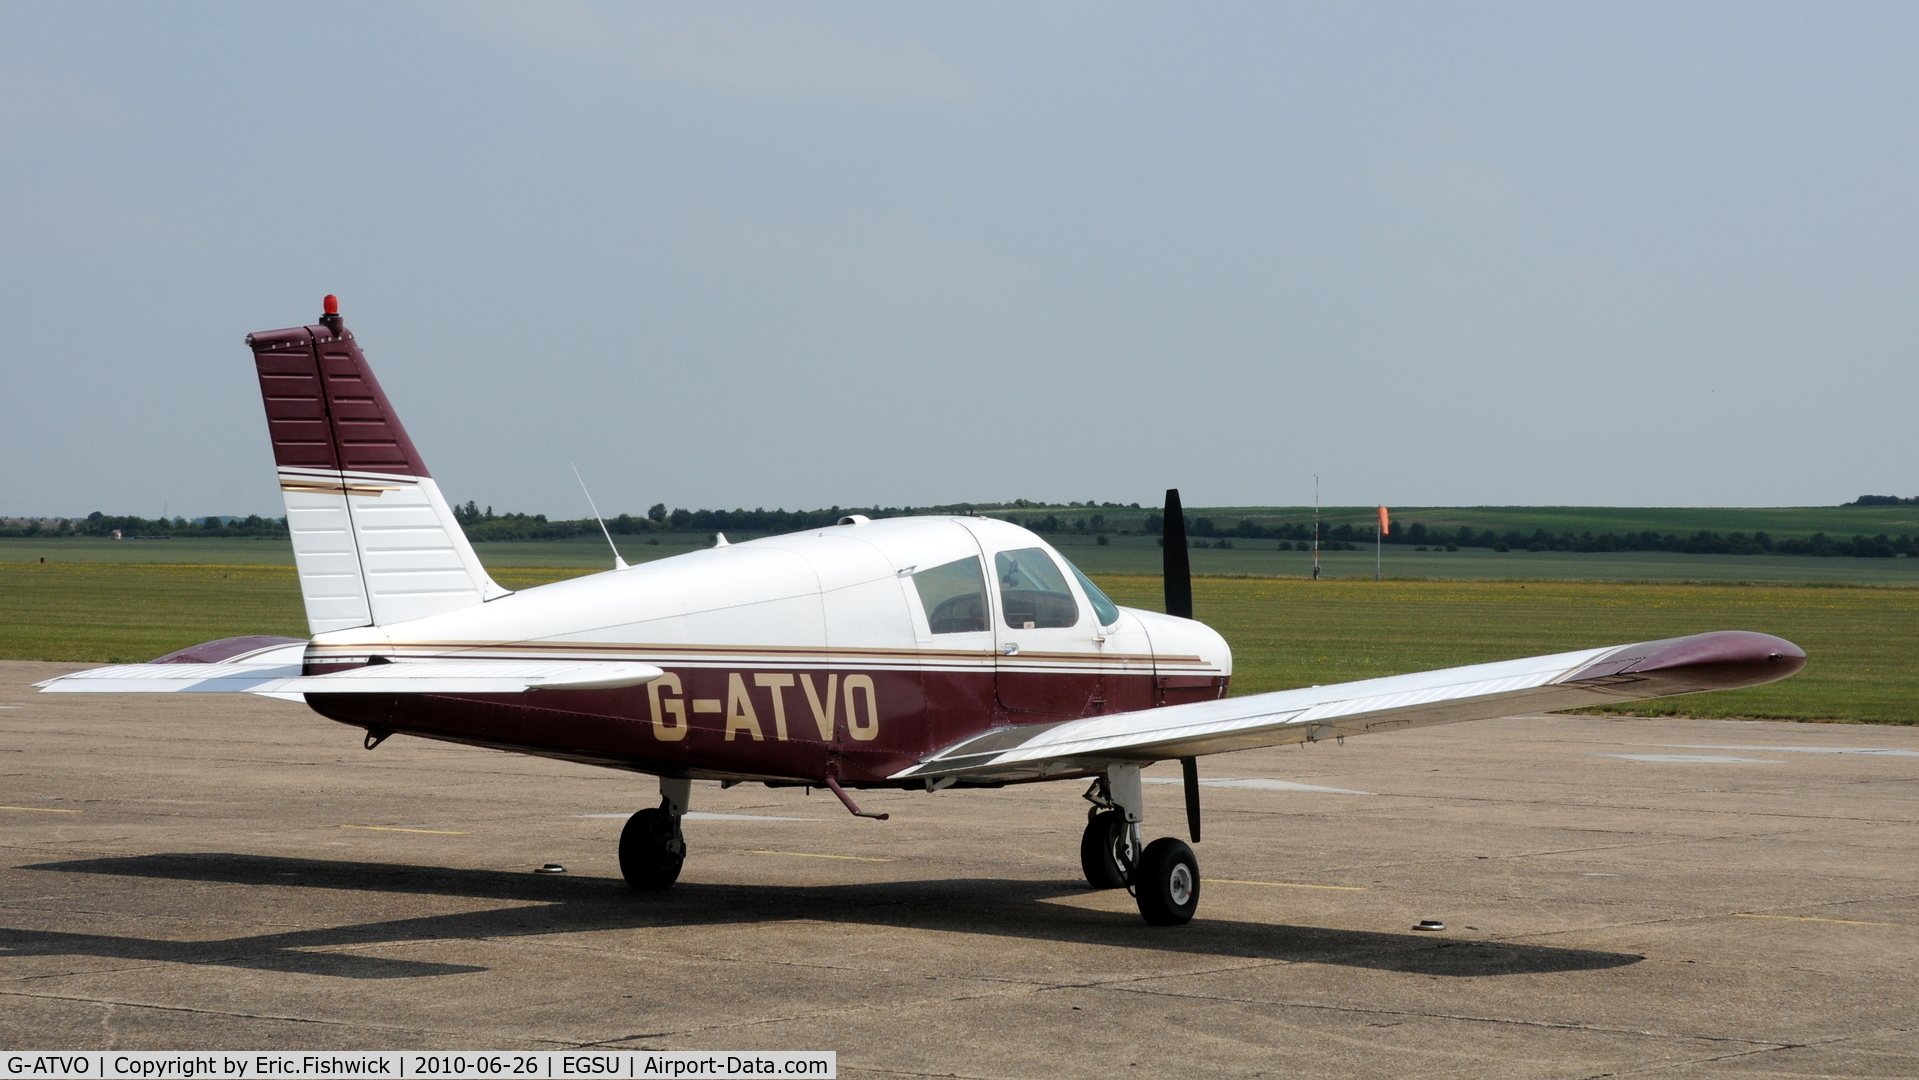 G-ATVO, 1966 Piper PA-28-140 Cherokee C/N 28-22020, G-ATVO at Duxford Airfield